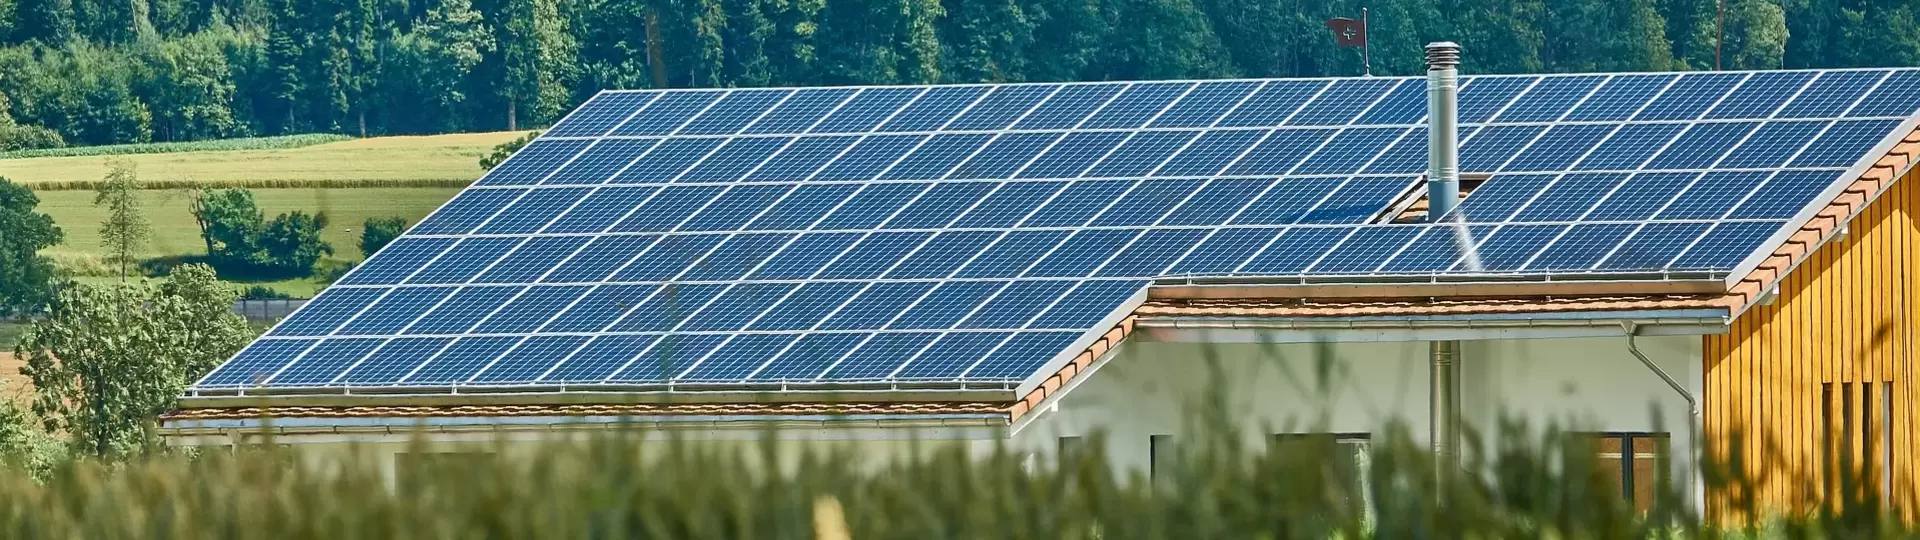 Solardach auf Landwirtschaftsgebäude